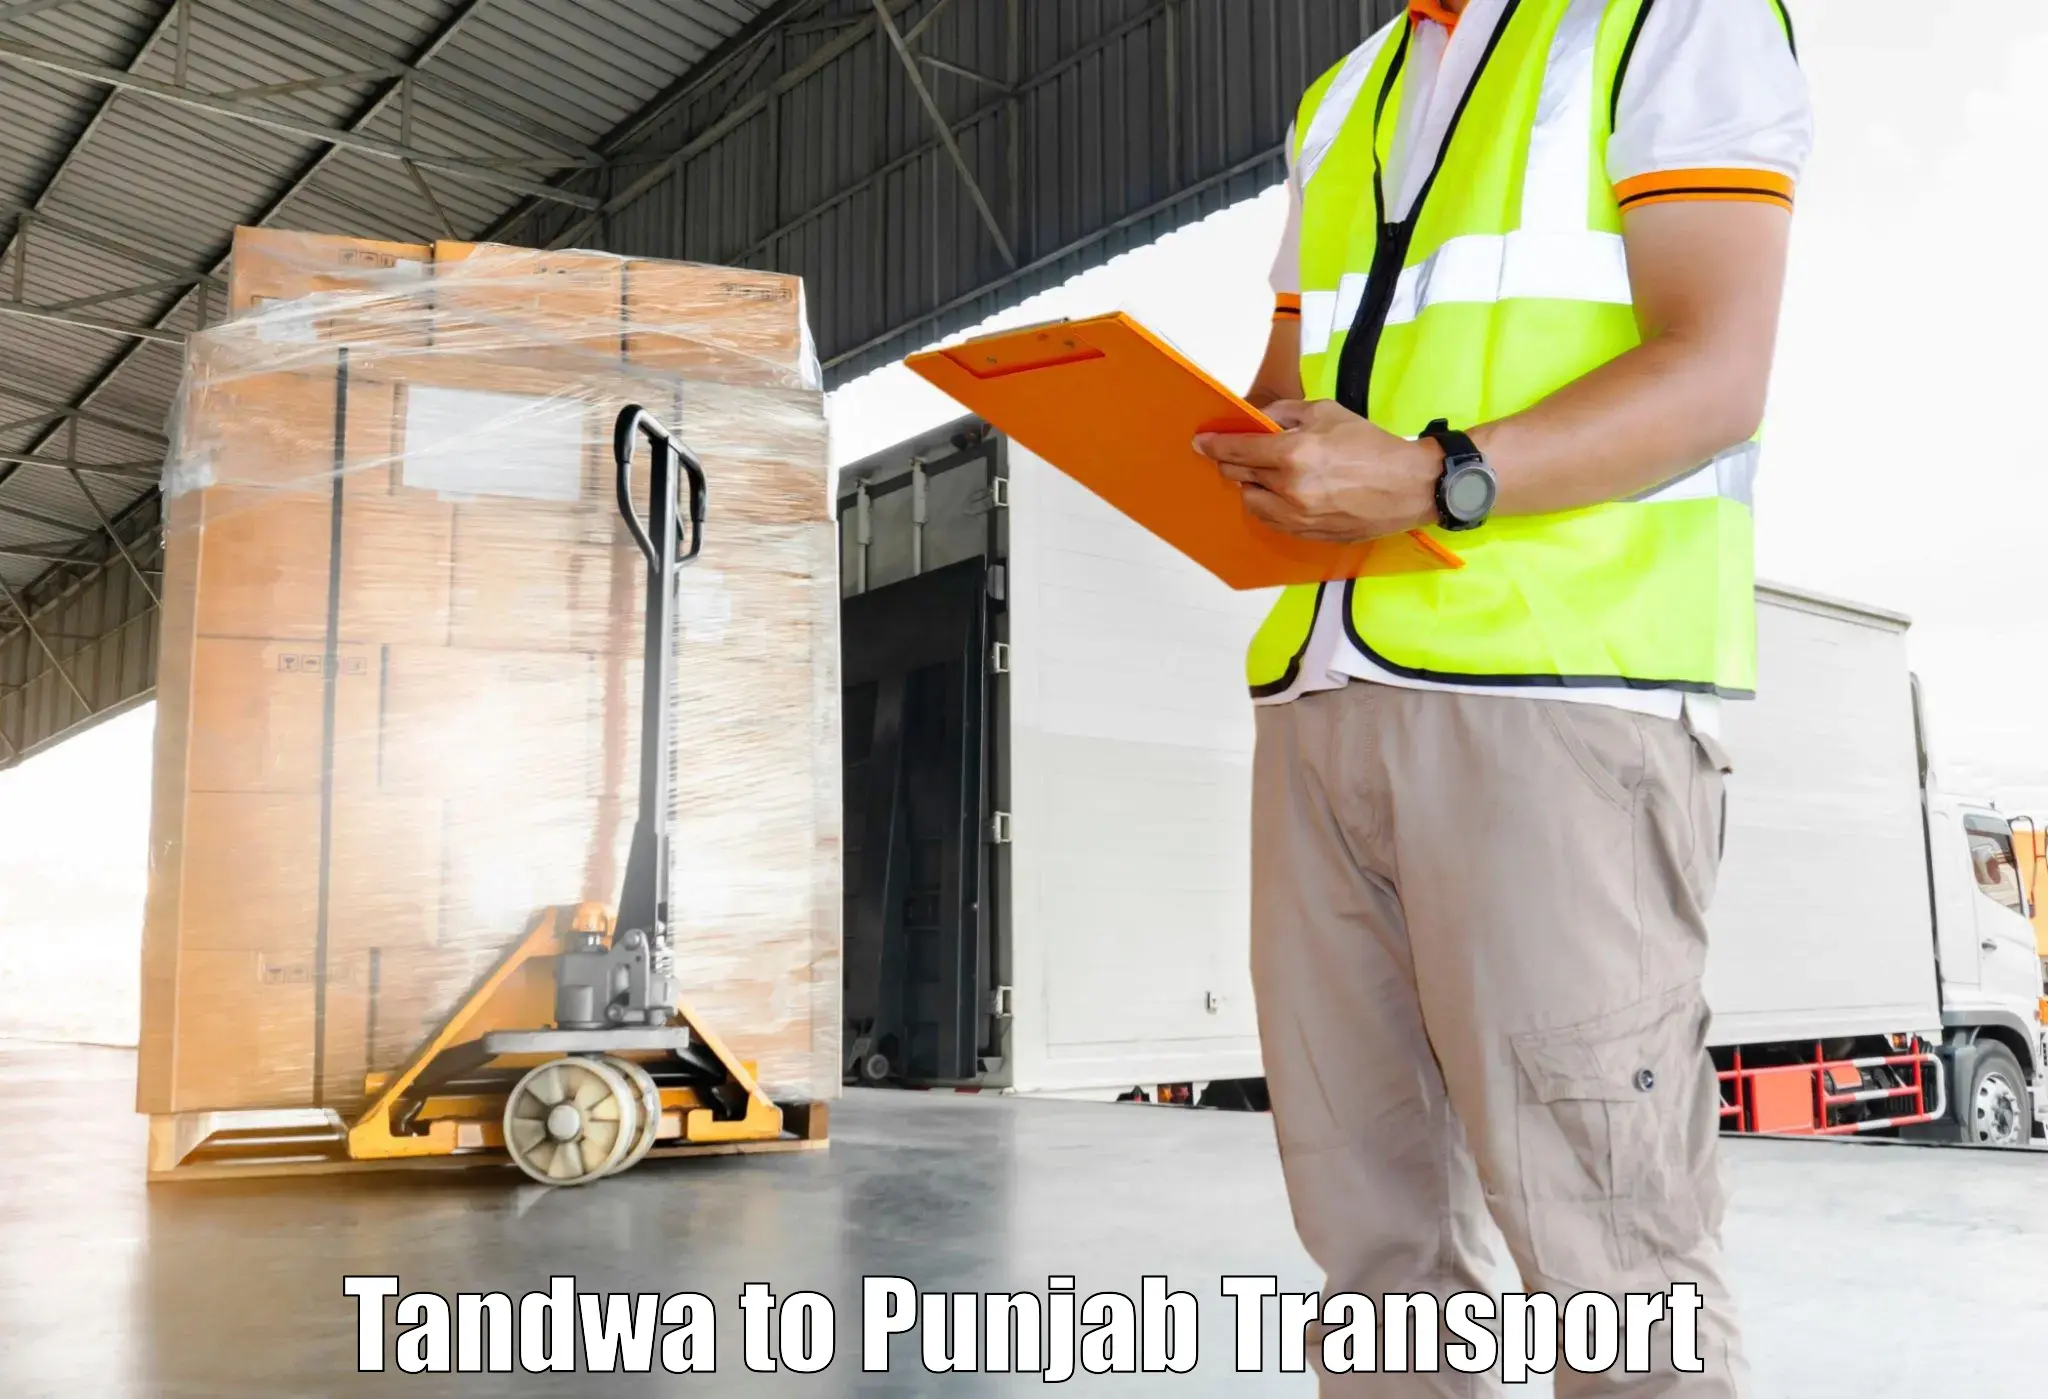 Bike transport service Tandwa to Punjab